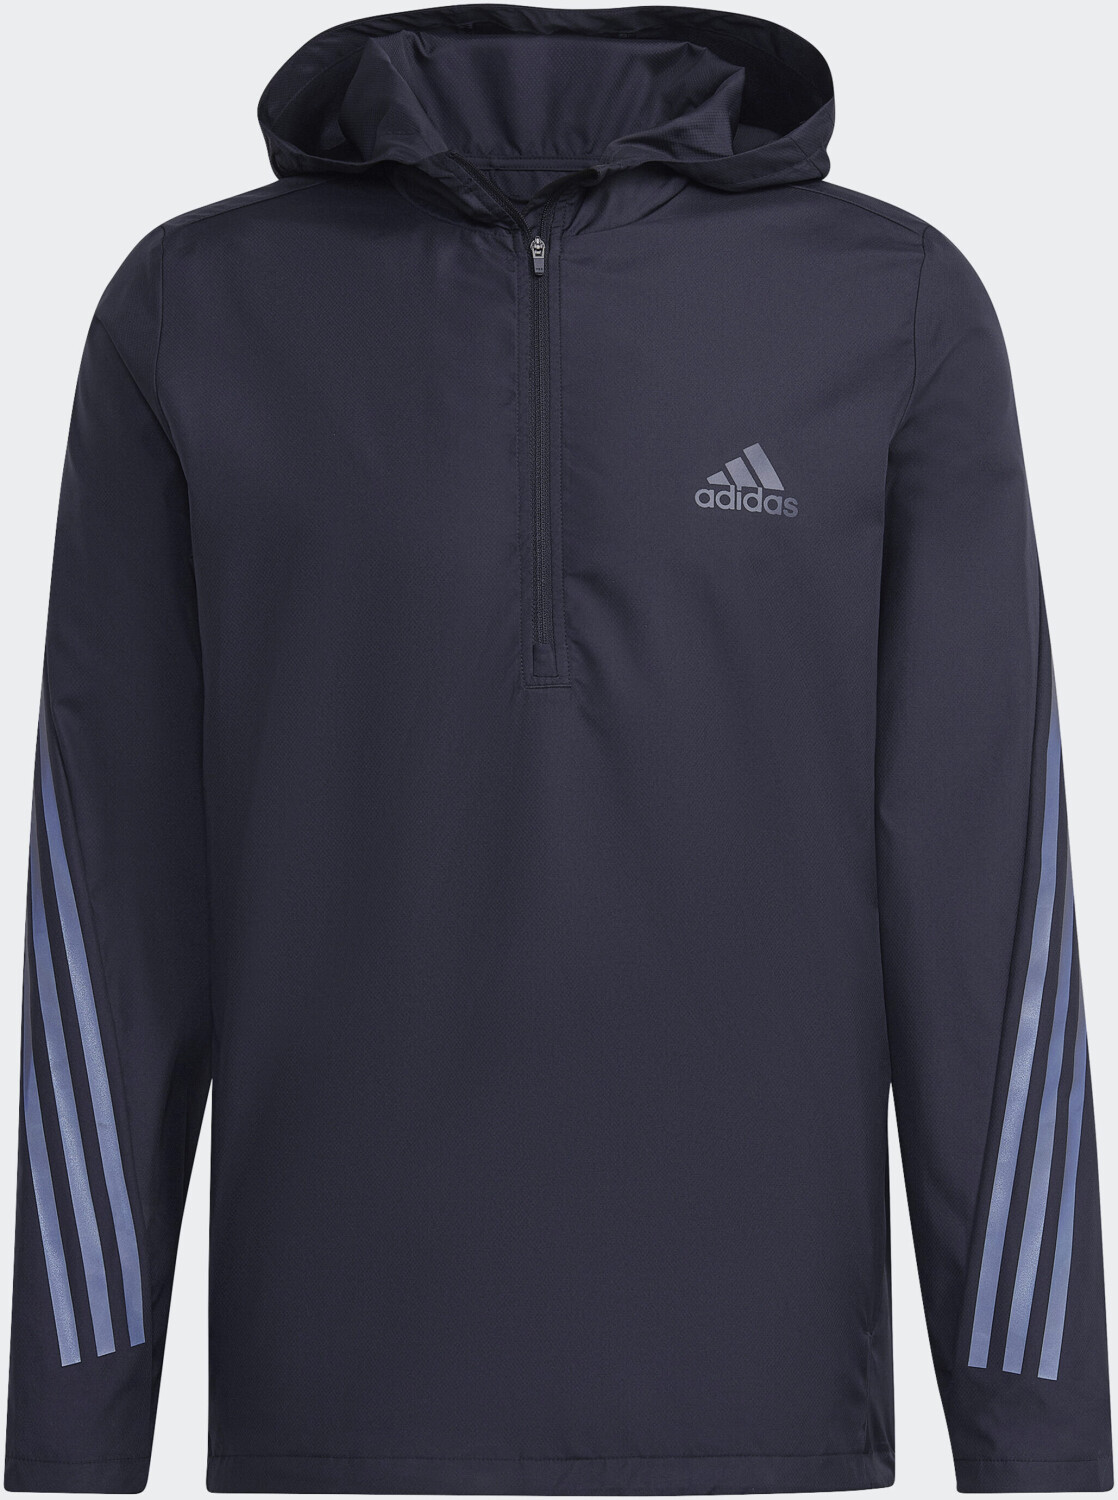 Adidas Run Icons 3-Stripe Jacket Preisvergleich ab black € | 53,49 bei Men